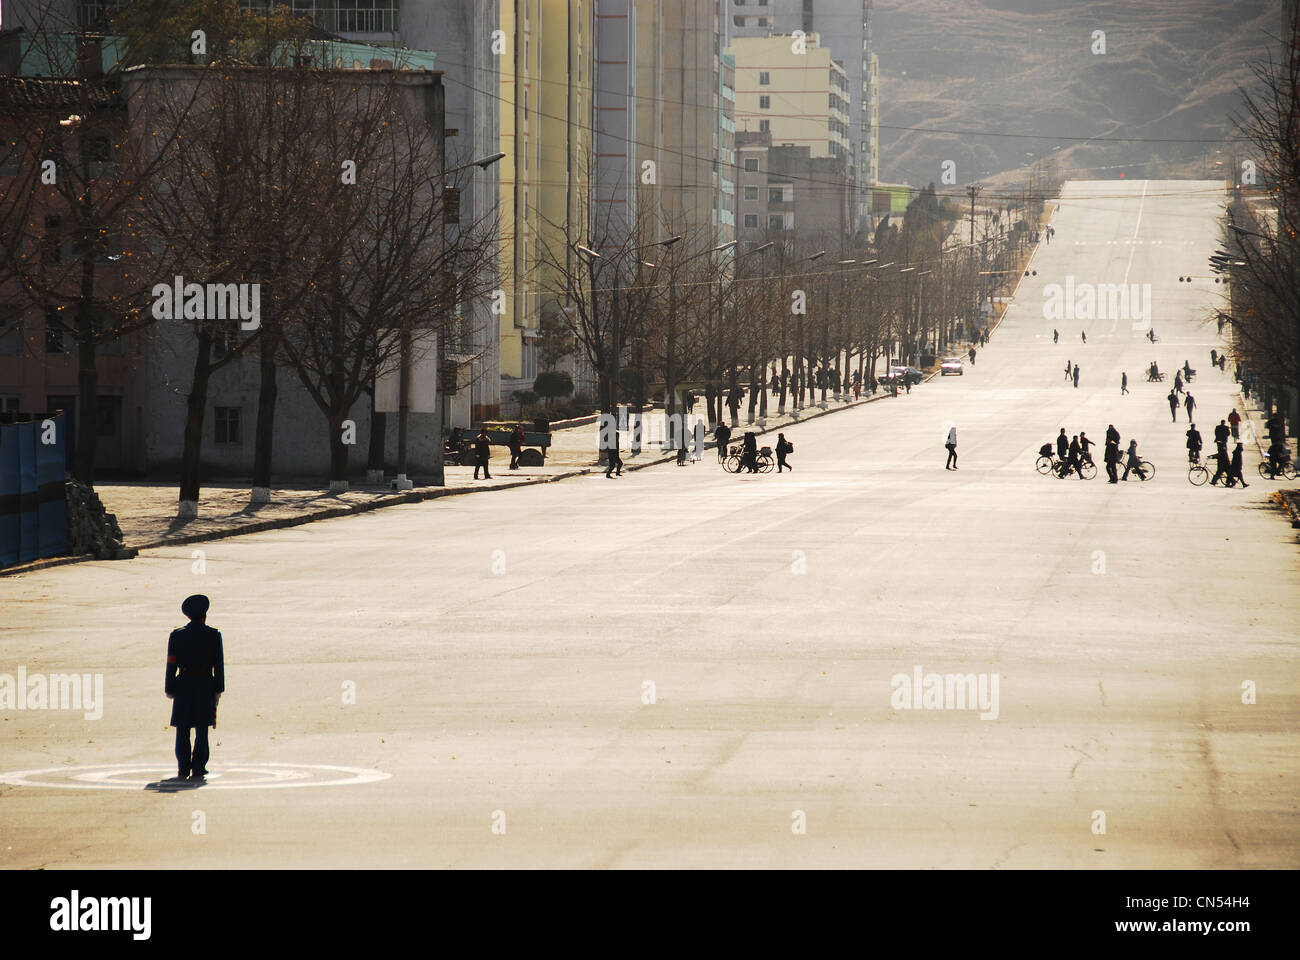 Corea del Norte, Kaesong, oficial de policía haciendo el tráfico en una calle sin coches. Foto de stock